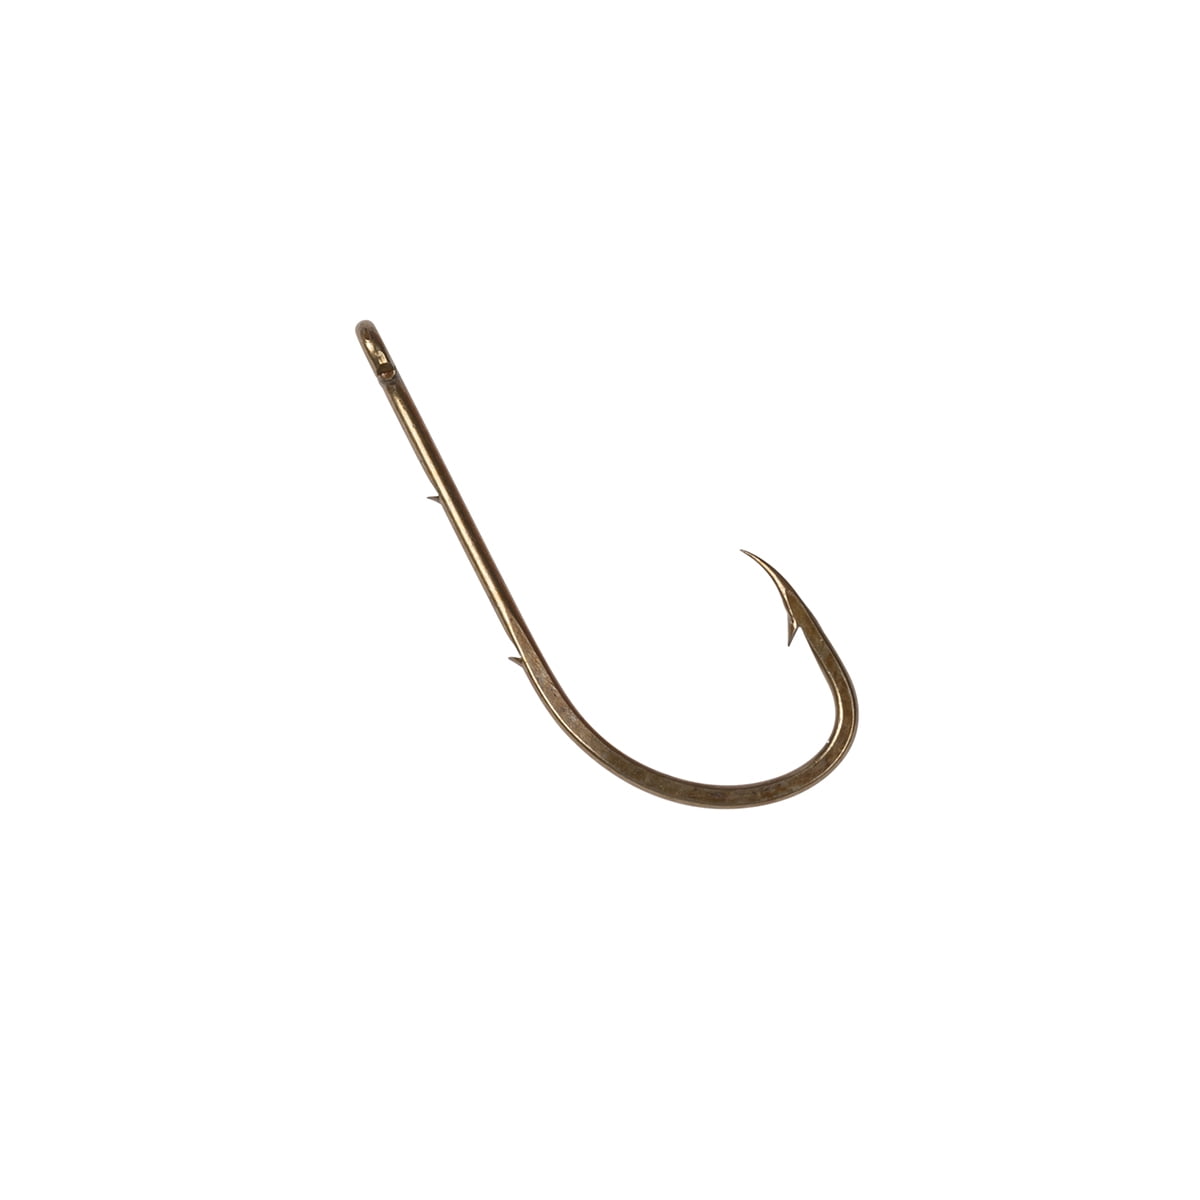 Festnight T-Type Easy Fish Hook Remover Minimizzare Le ferite Rimozione degli ami Strumento Manuale Silvery & S